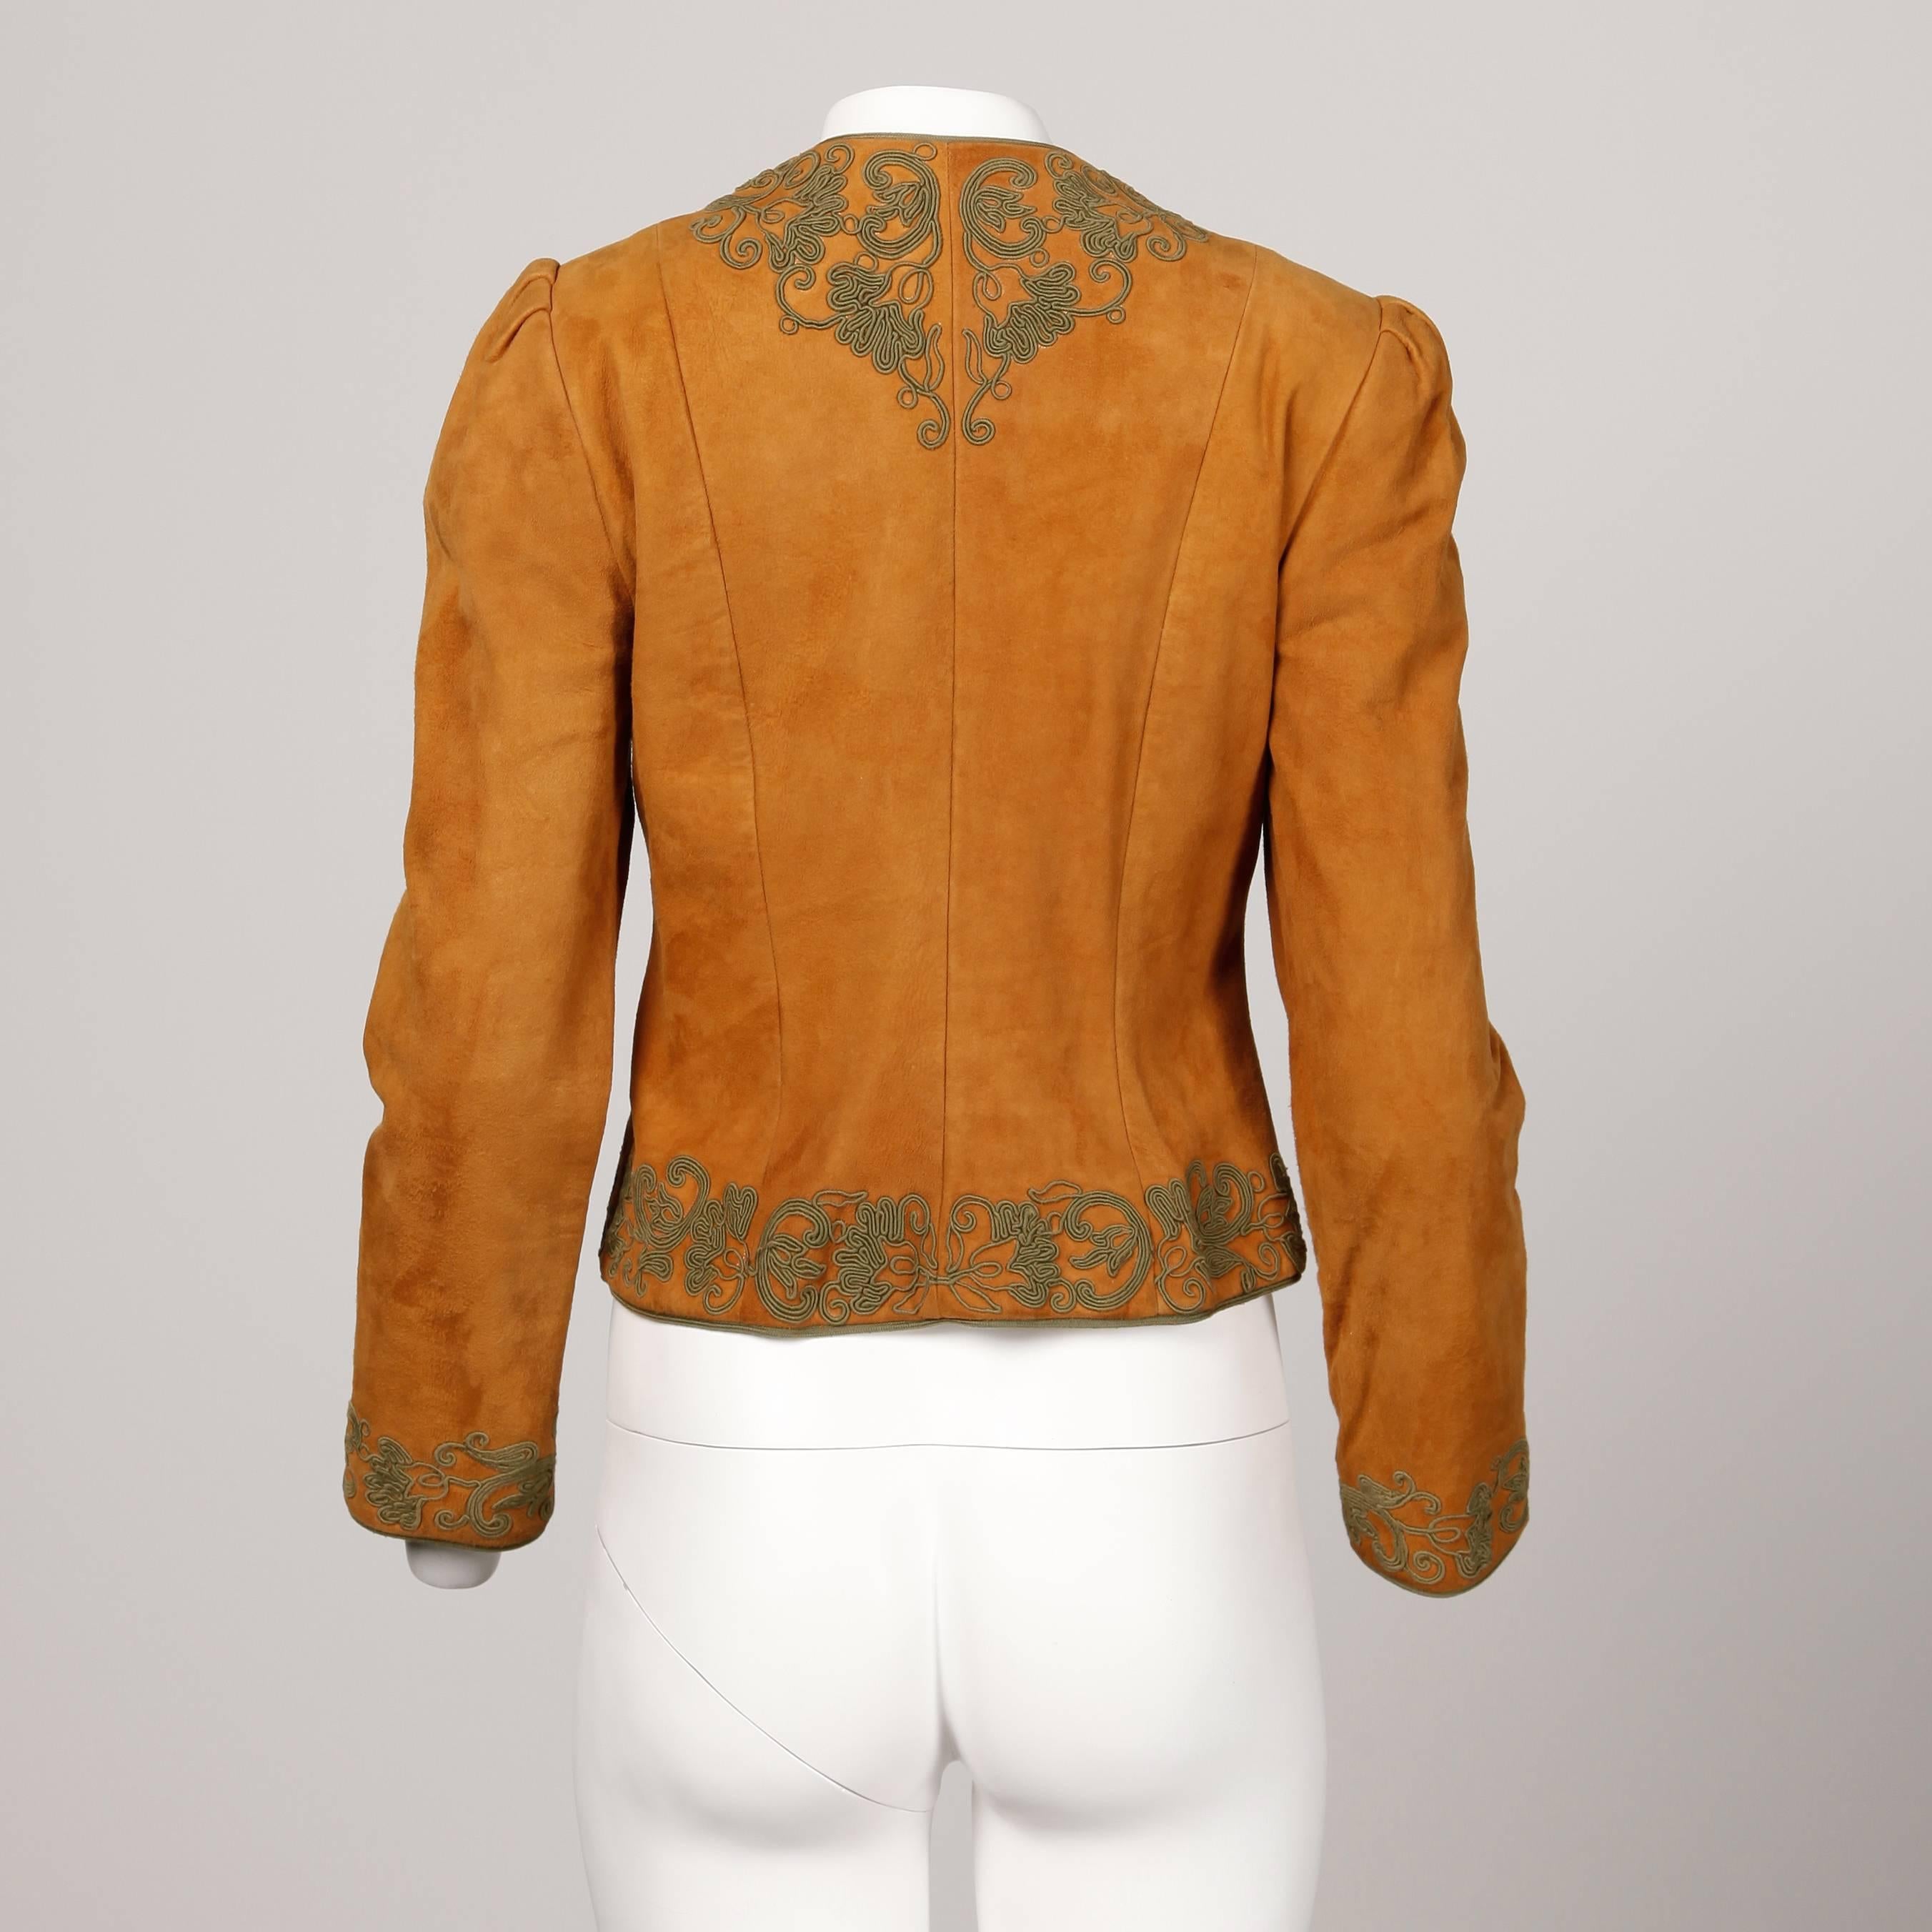 Oscar de la Renta Vintage 1970s Suede Leather Jacket with Green Cord Embroidery 1